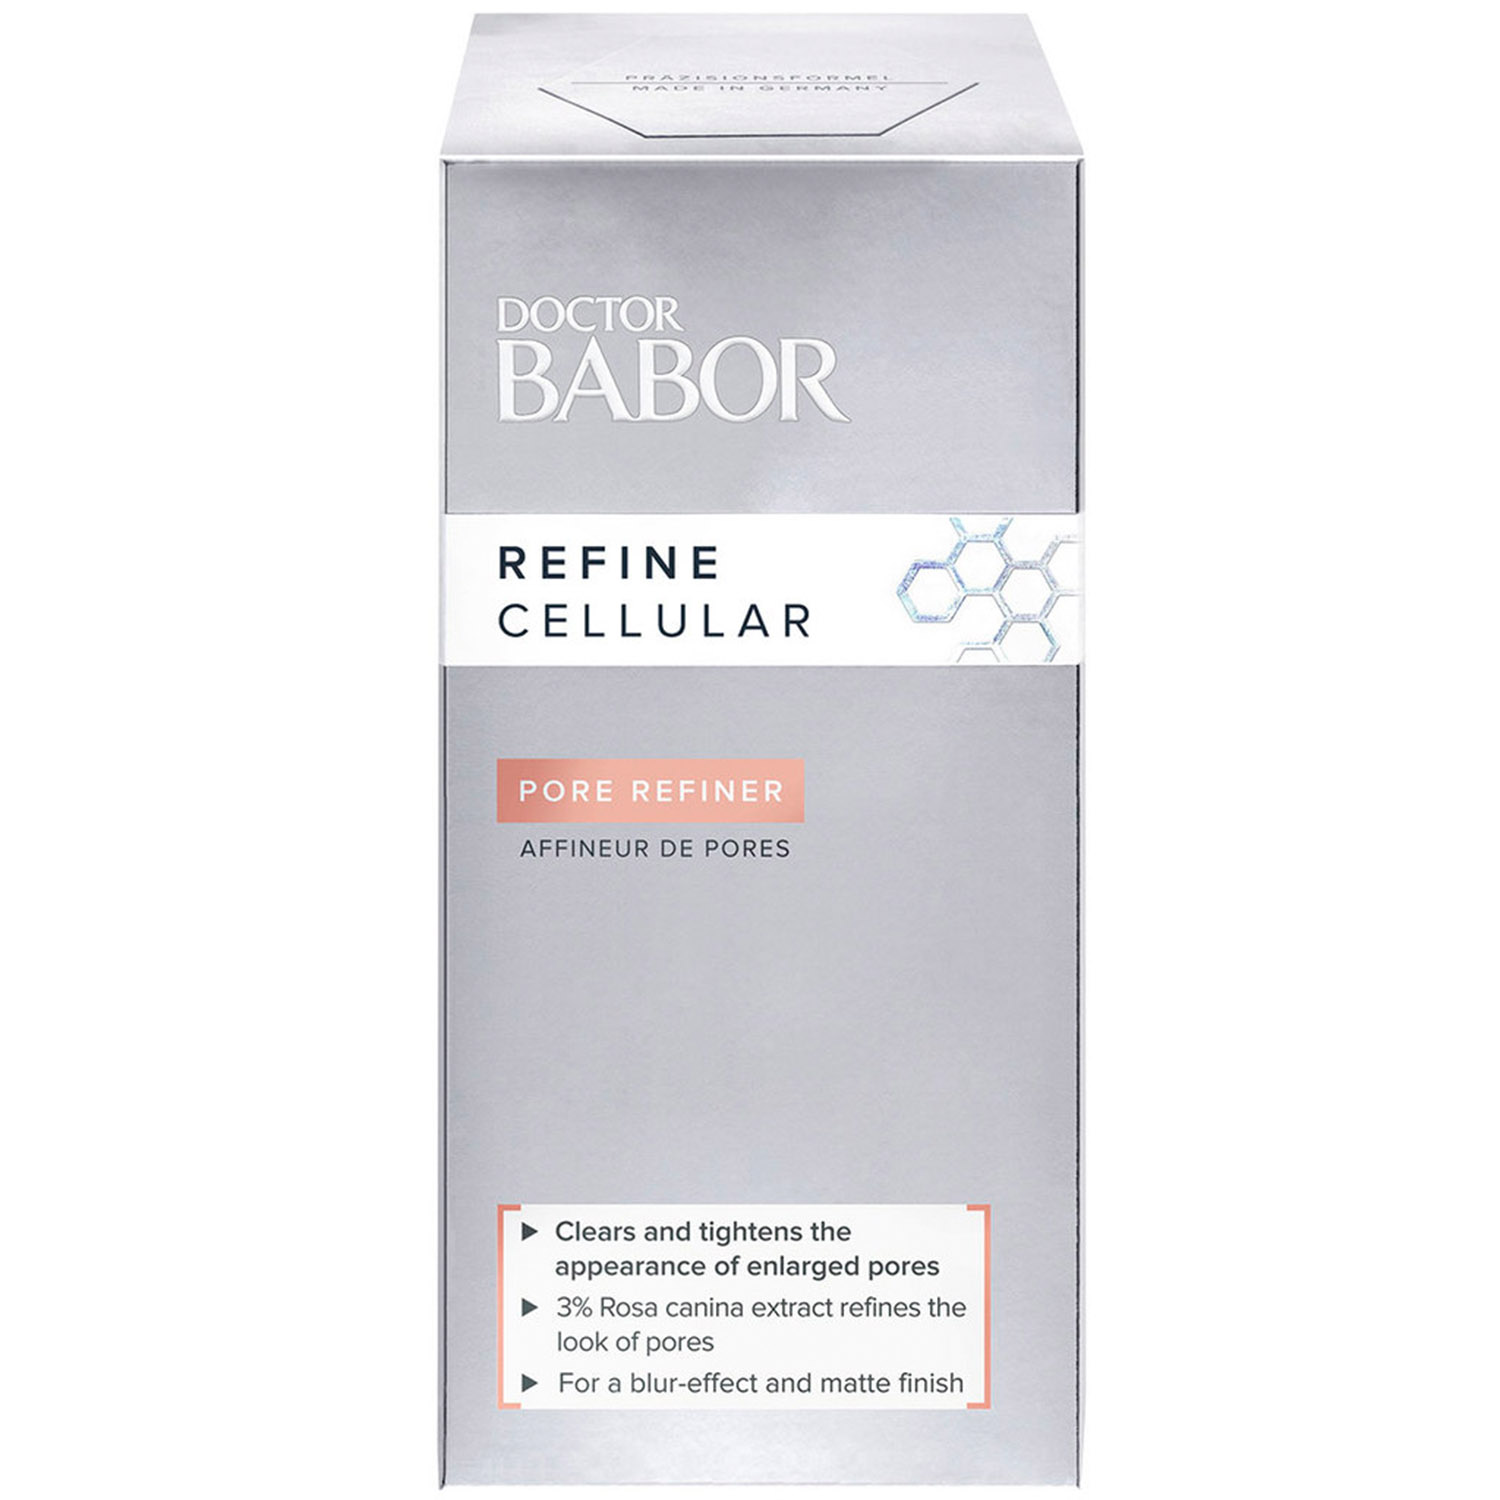 Сыворотка Babor Doctor Babor Refine Cellular Pore Refiner для усовершенствования кожи лица, 50 мл - фото 3